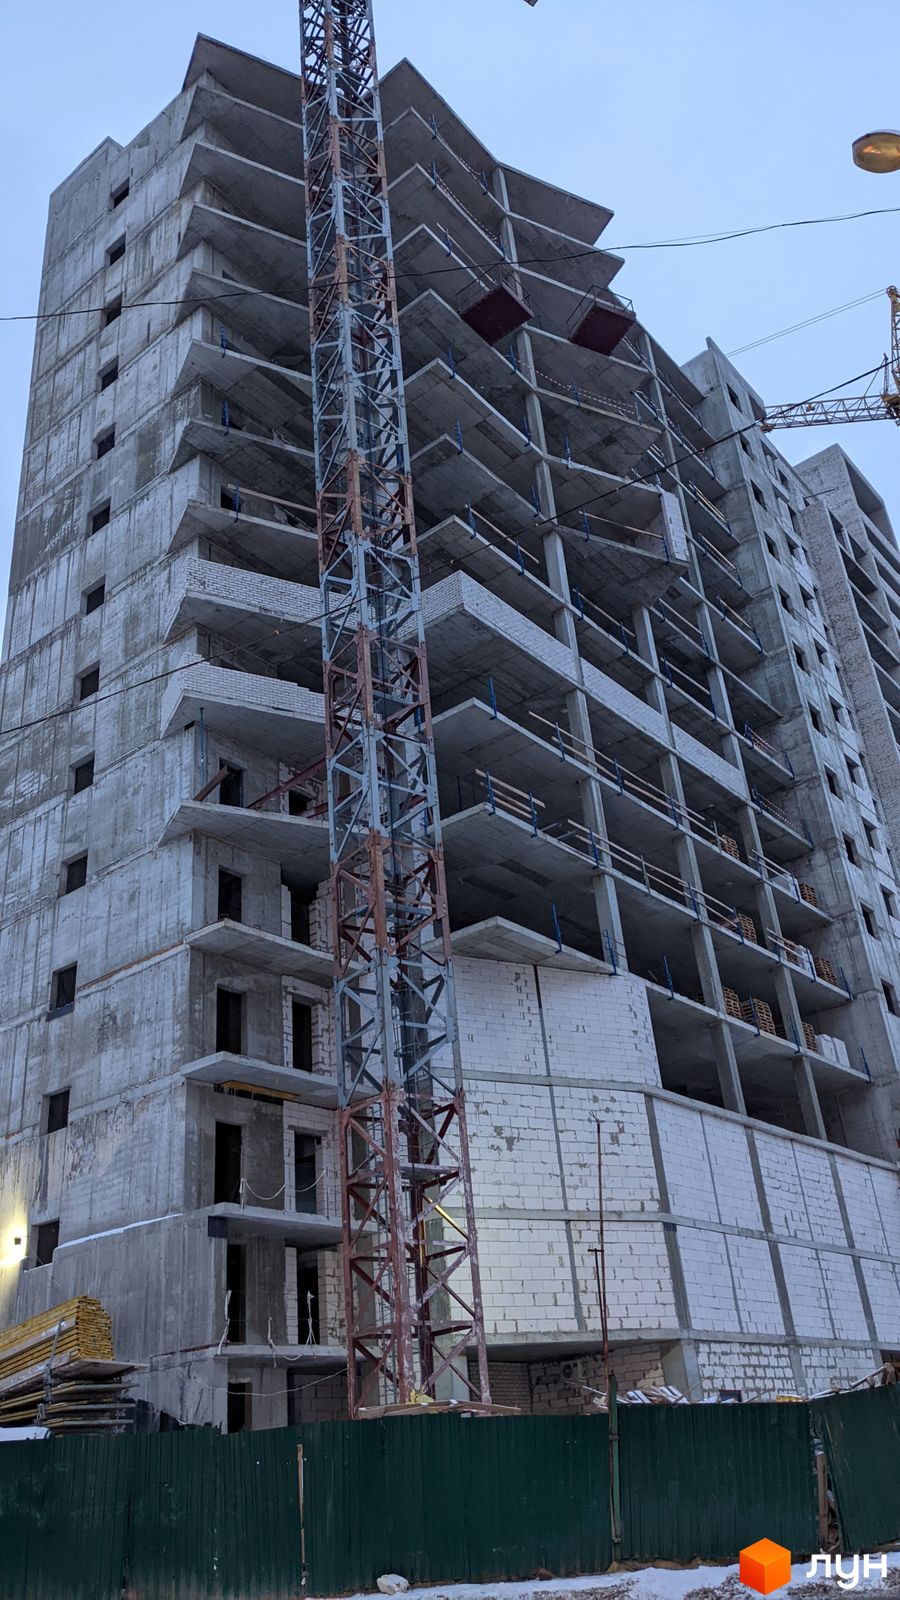 Моніторинг будівництва ЖК Овис - Ракурс 5, январь 2022